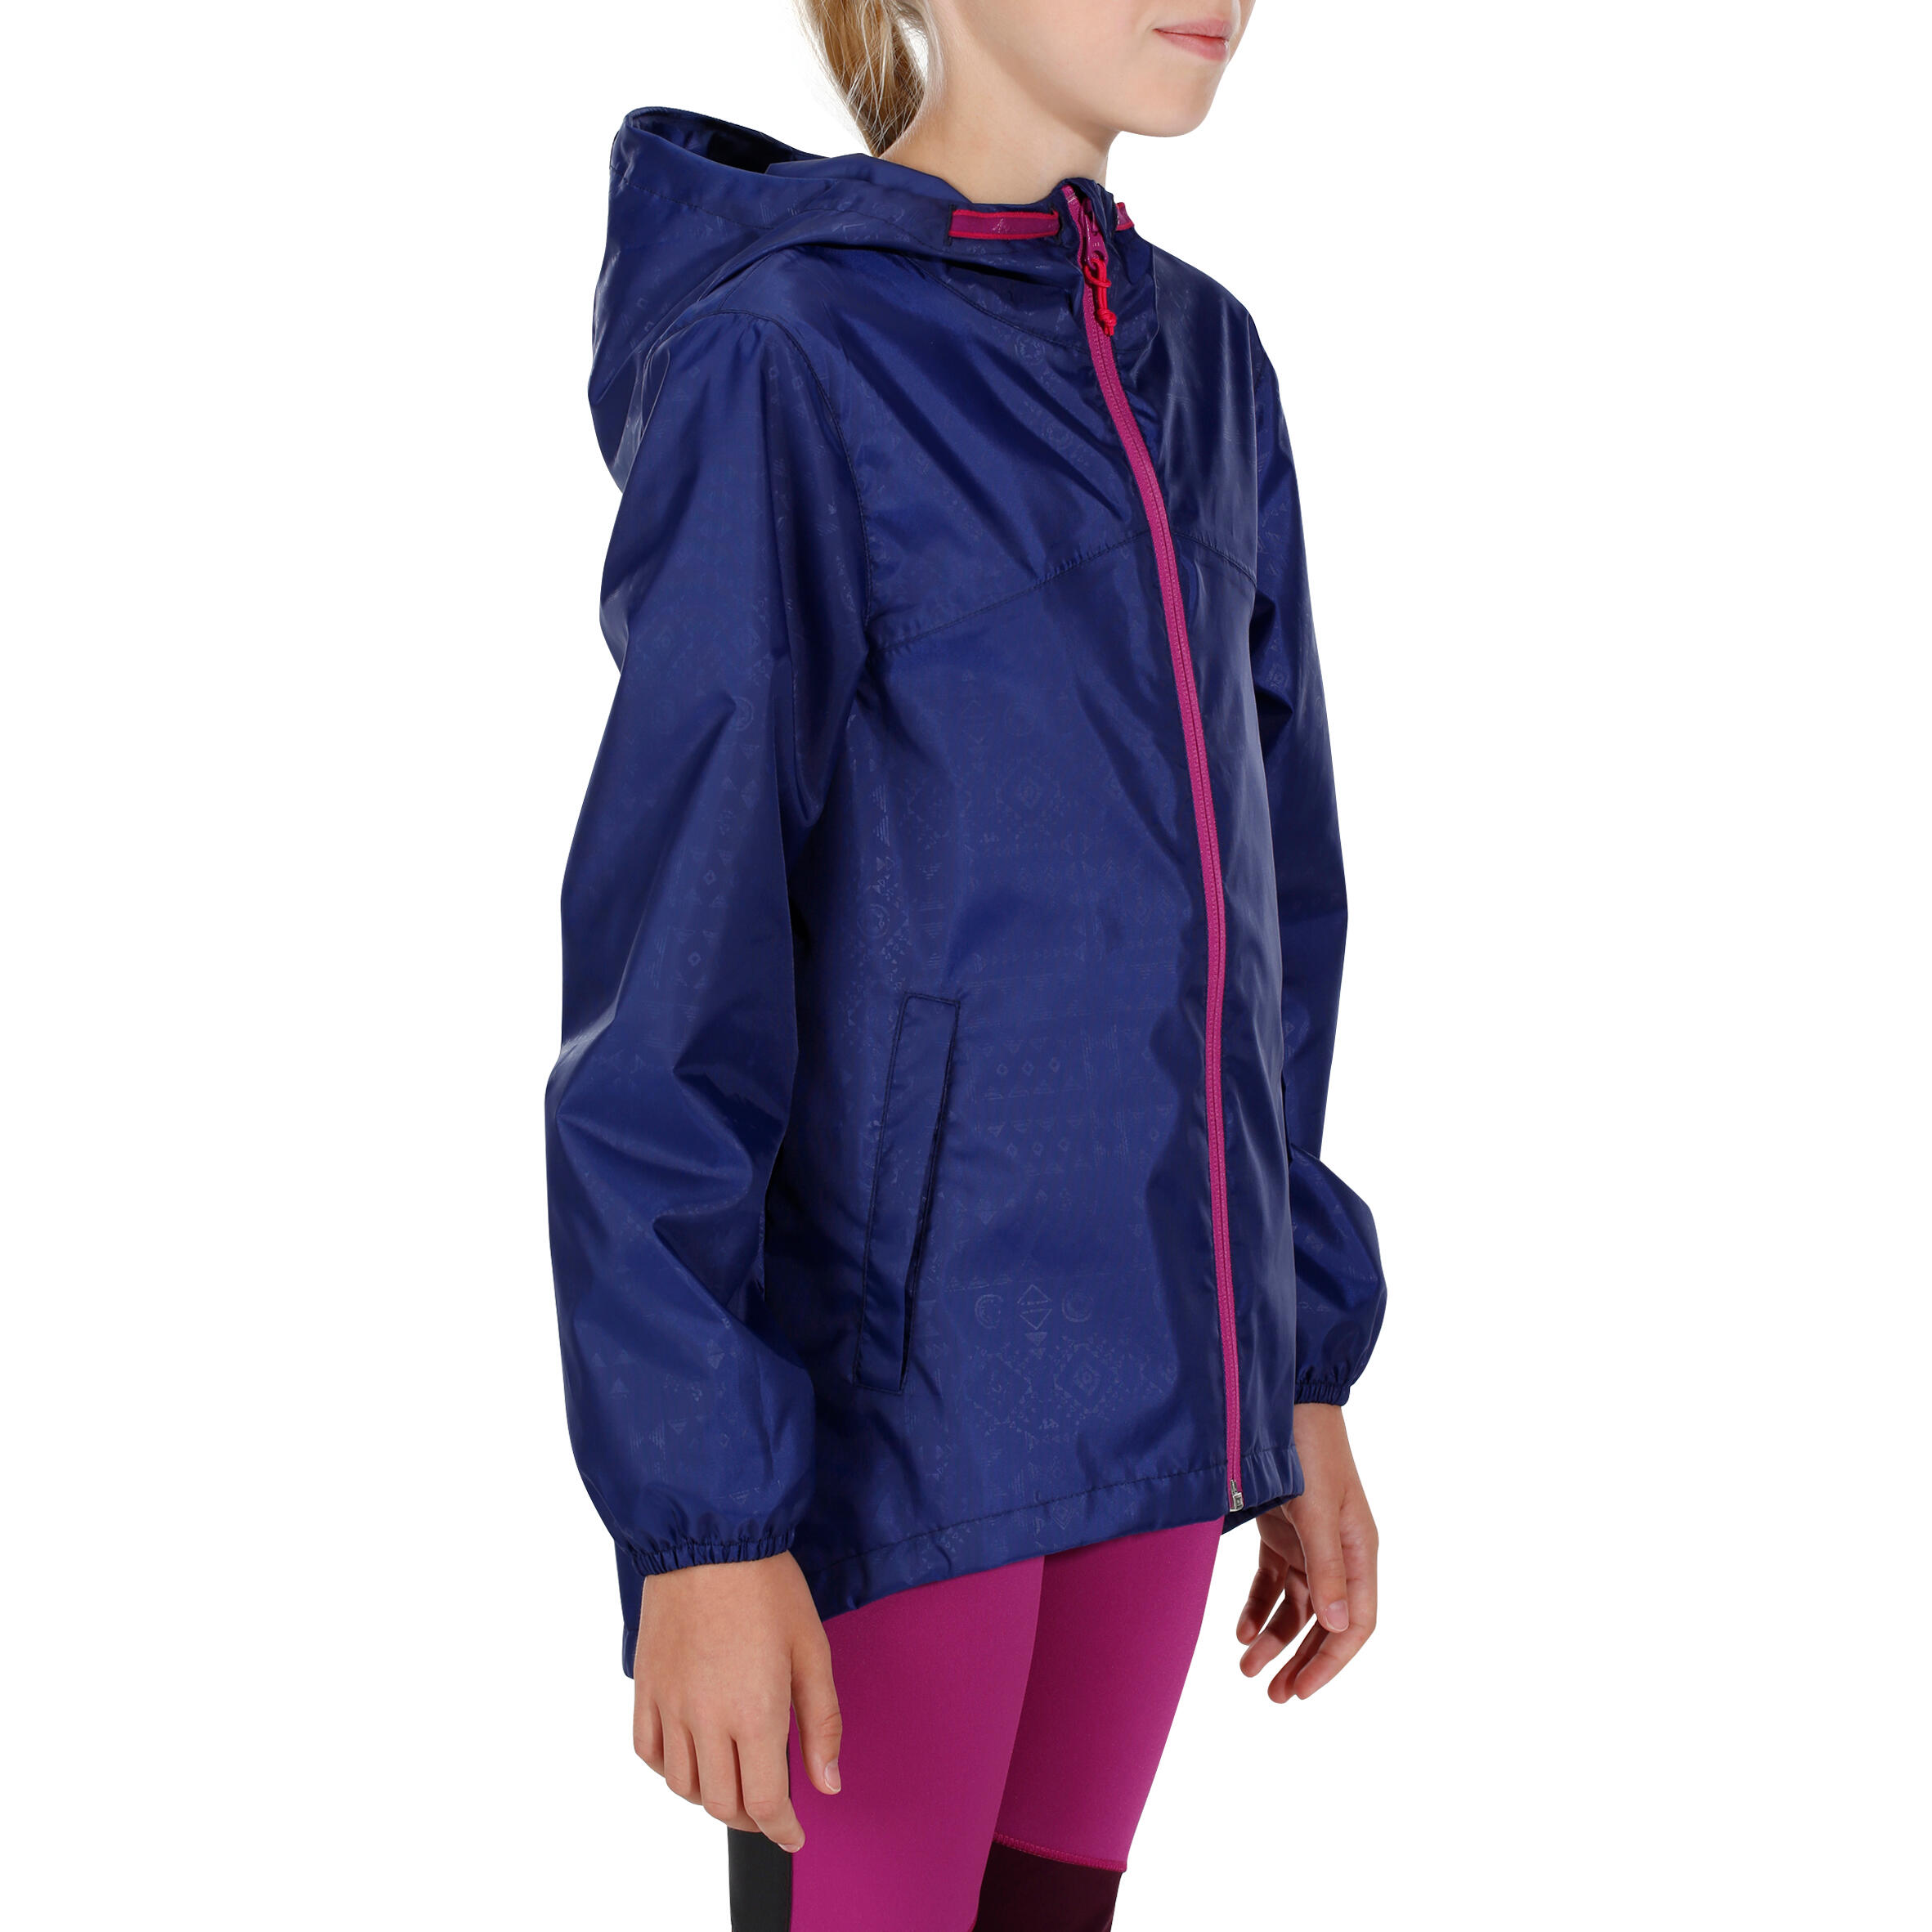 Hike 100 Waterproof Hiking Girl's Jacket - Navy Blue 4/14